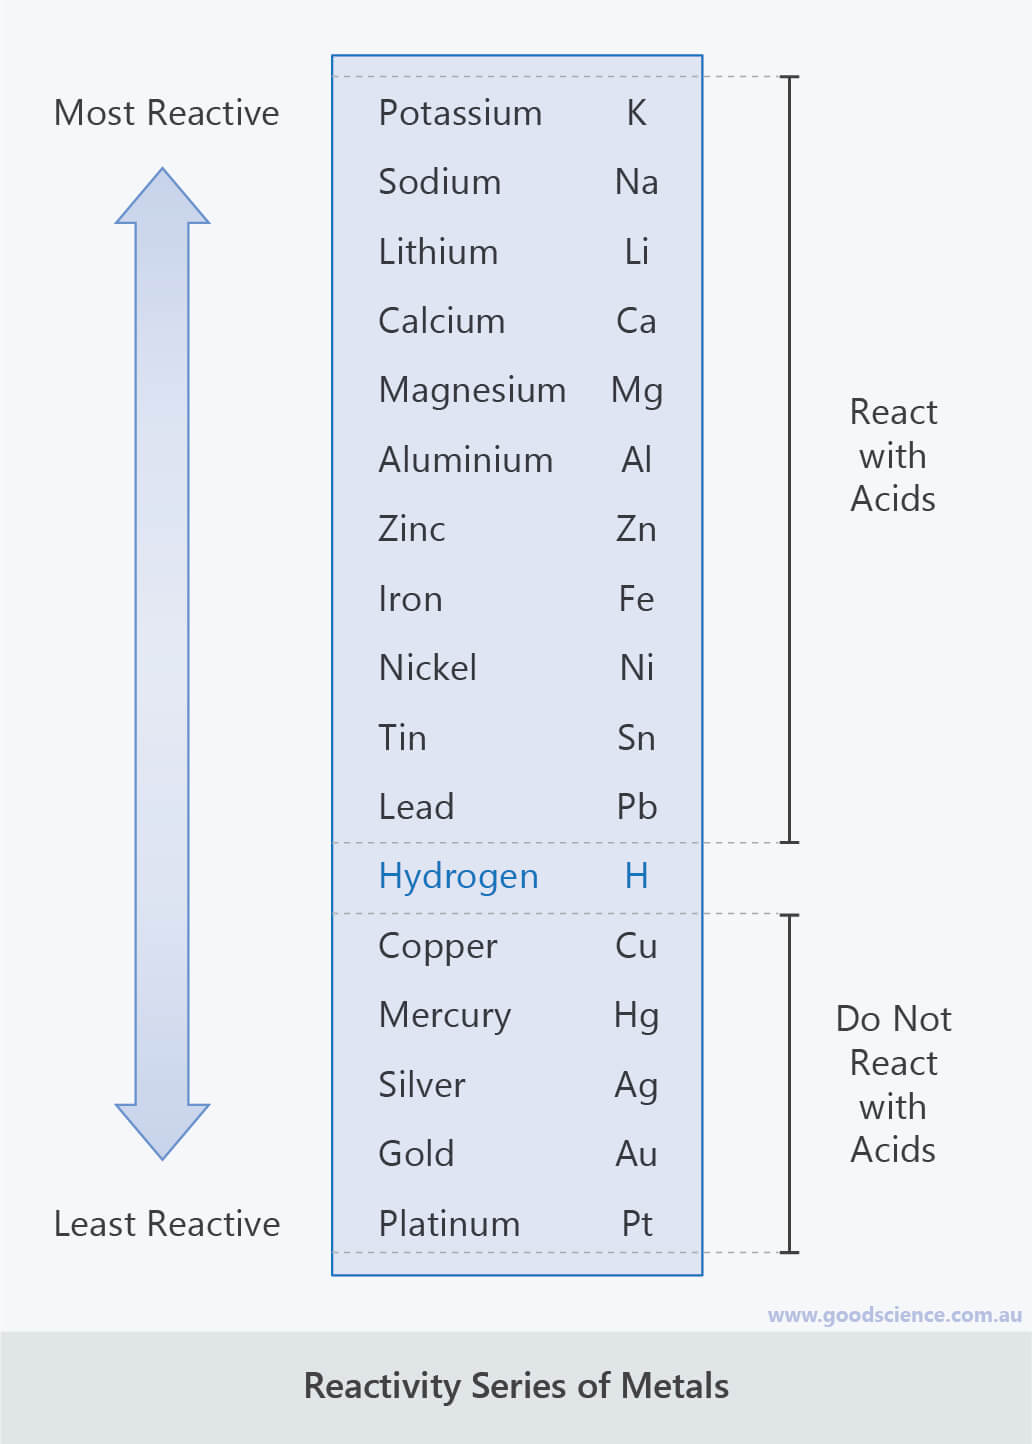 Acid-Metal Reactions | Good Science